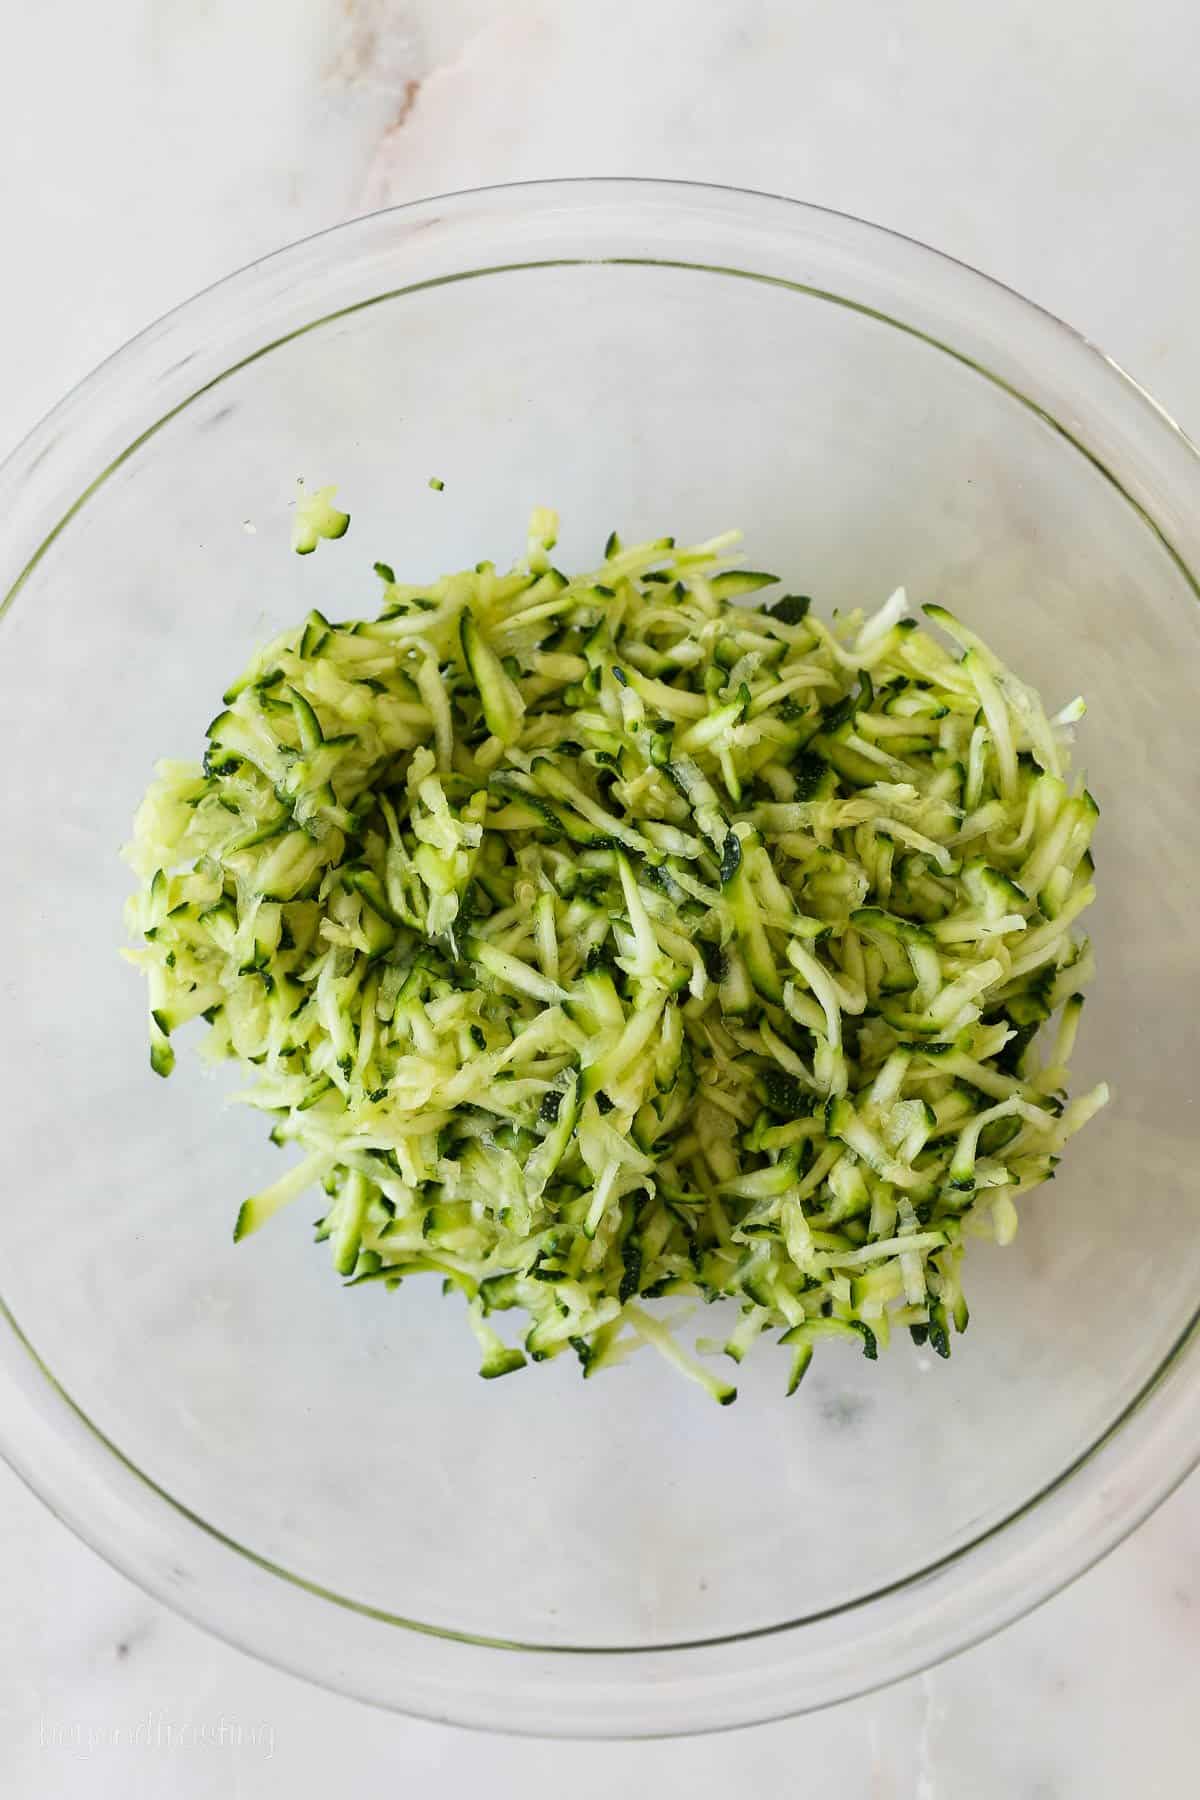 Shredded zucchini in a bowl